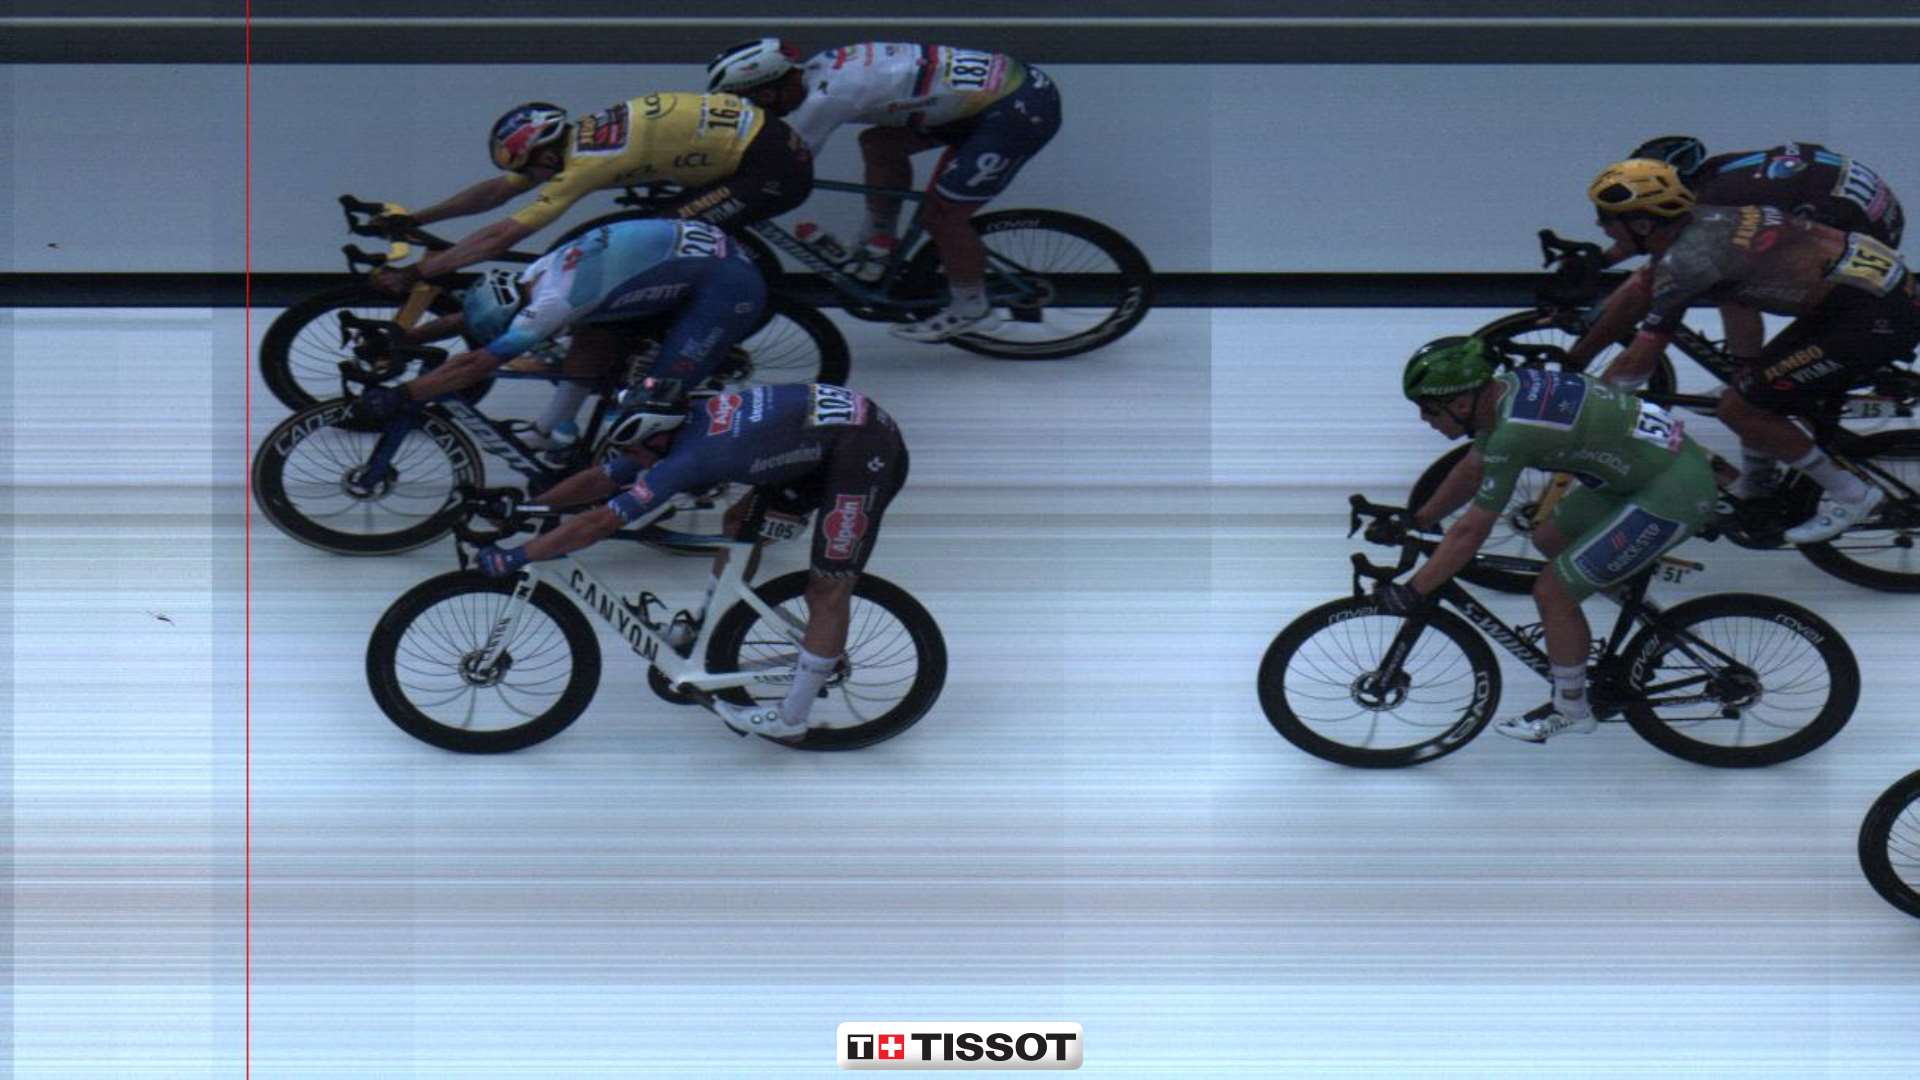 Tour de Francia Etapa 3: Groenewegen ganó en el foto finish